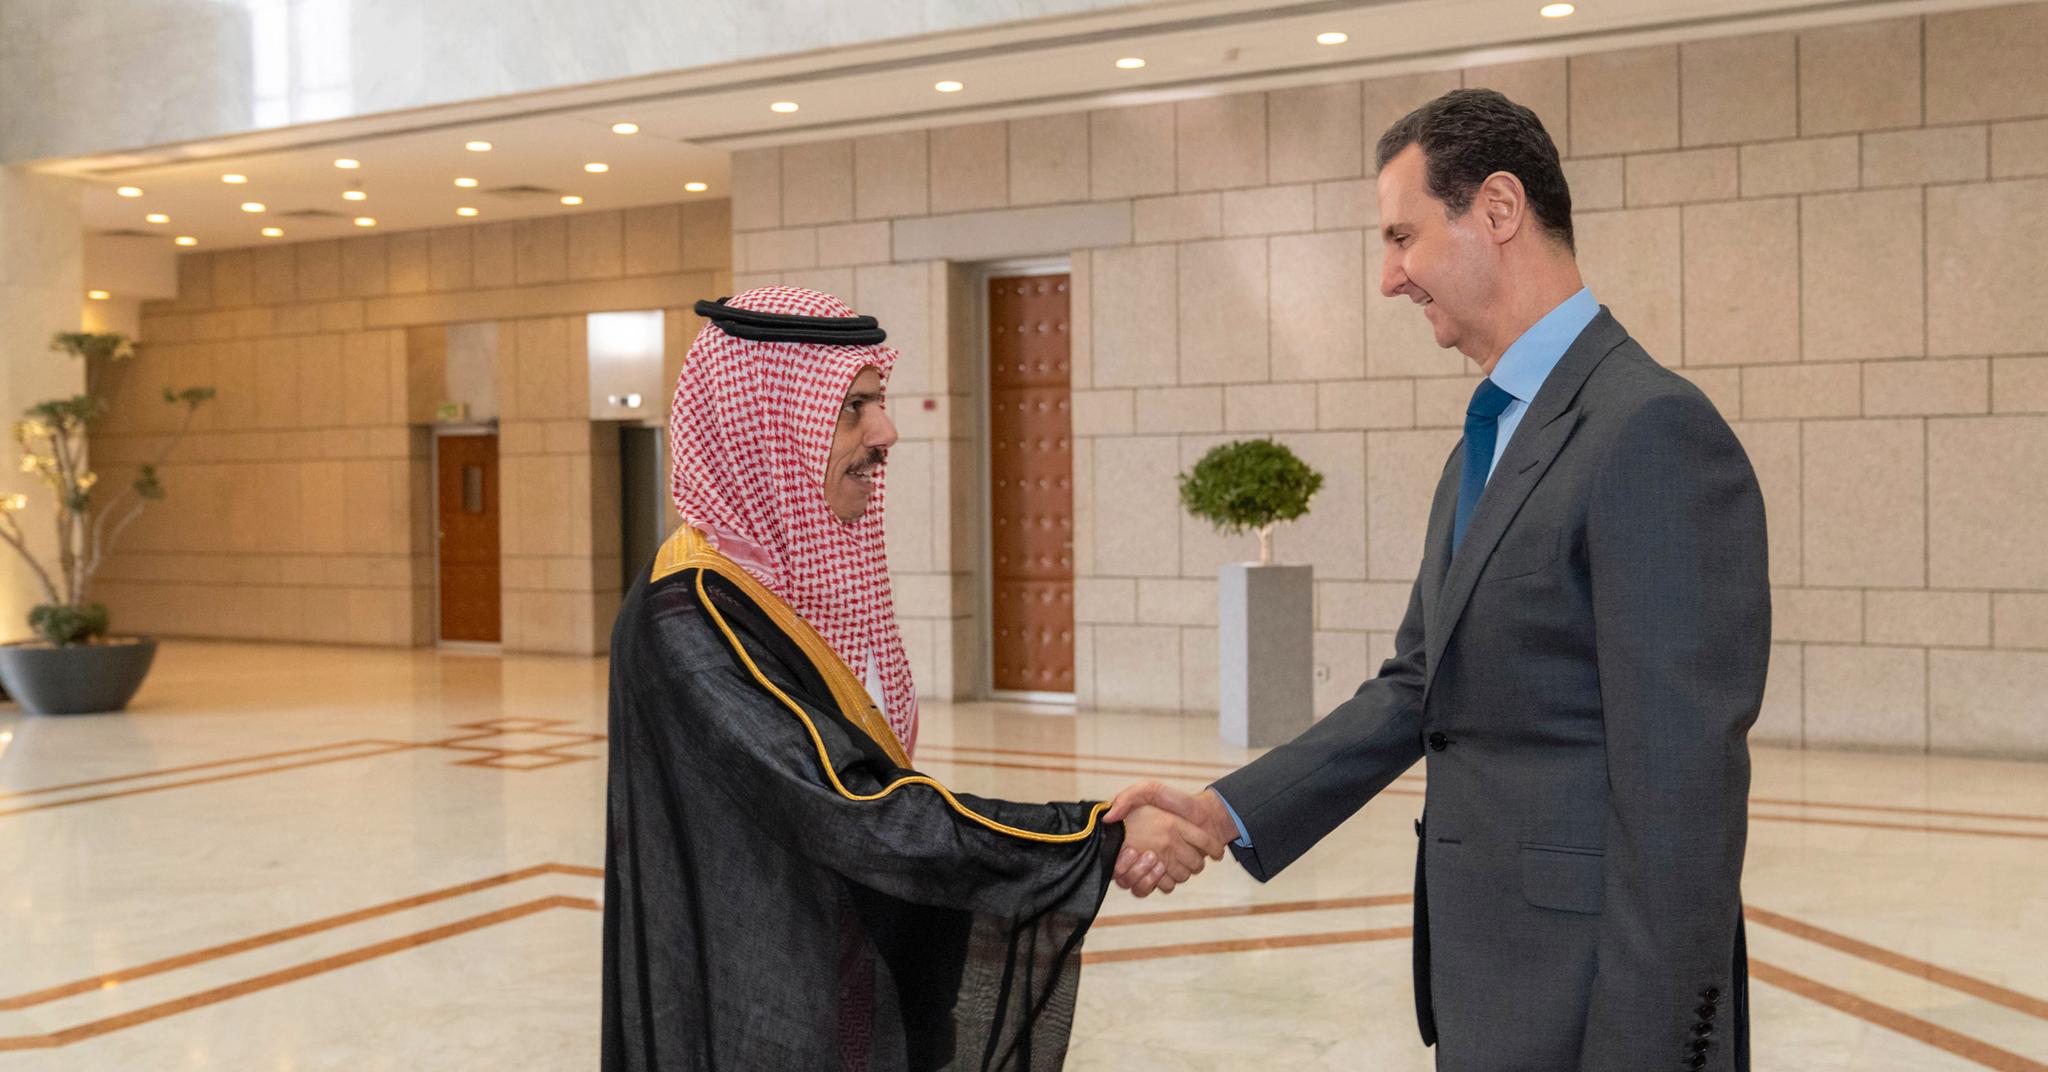 Nylig reiste Saudi-Arabias utenriksminister prins Faisal bin Farhan til Damaskus for å møte Syrias president Bashar al-Assad. For noen få år siden var det utenkelig.